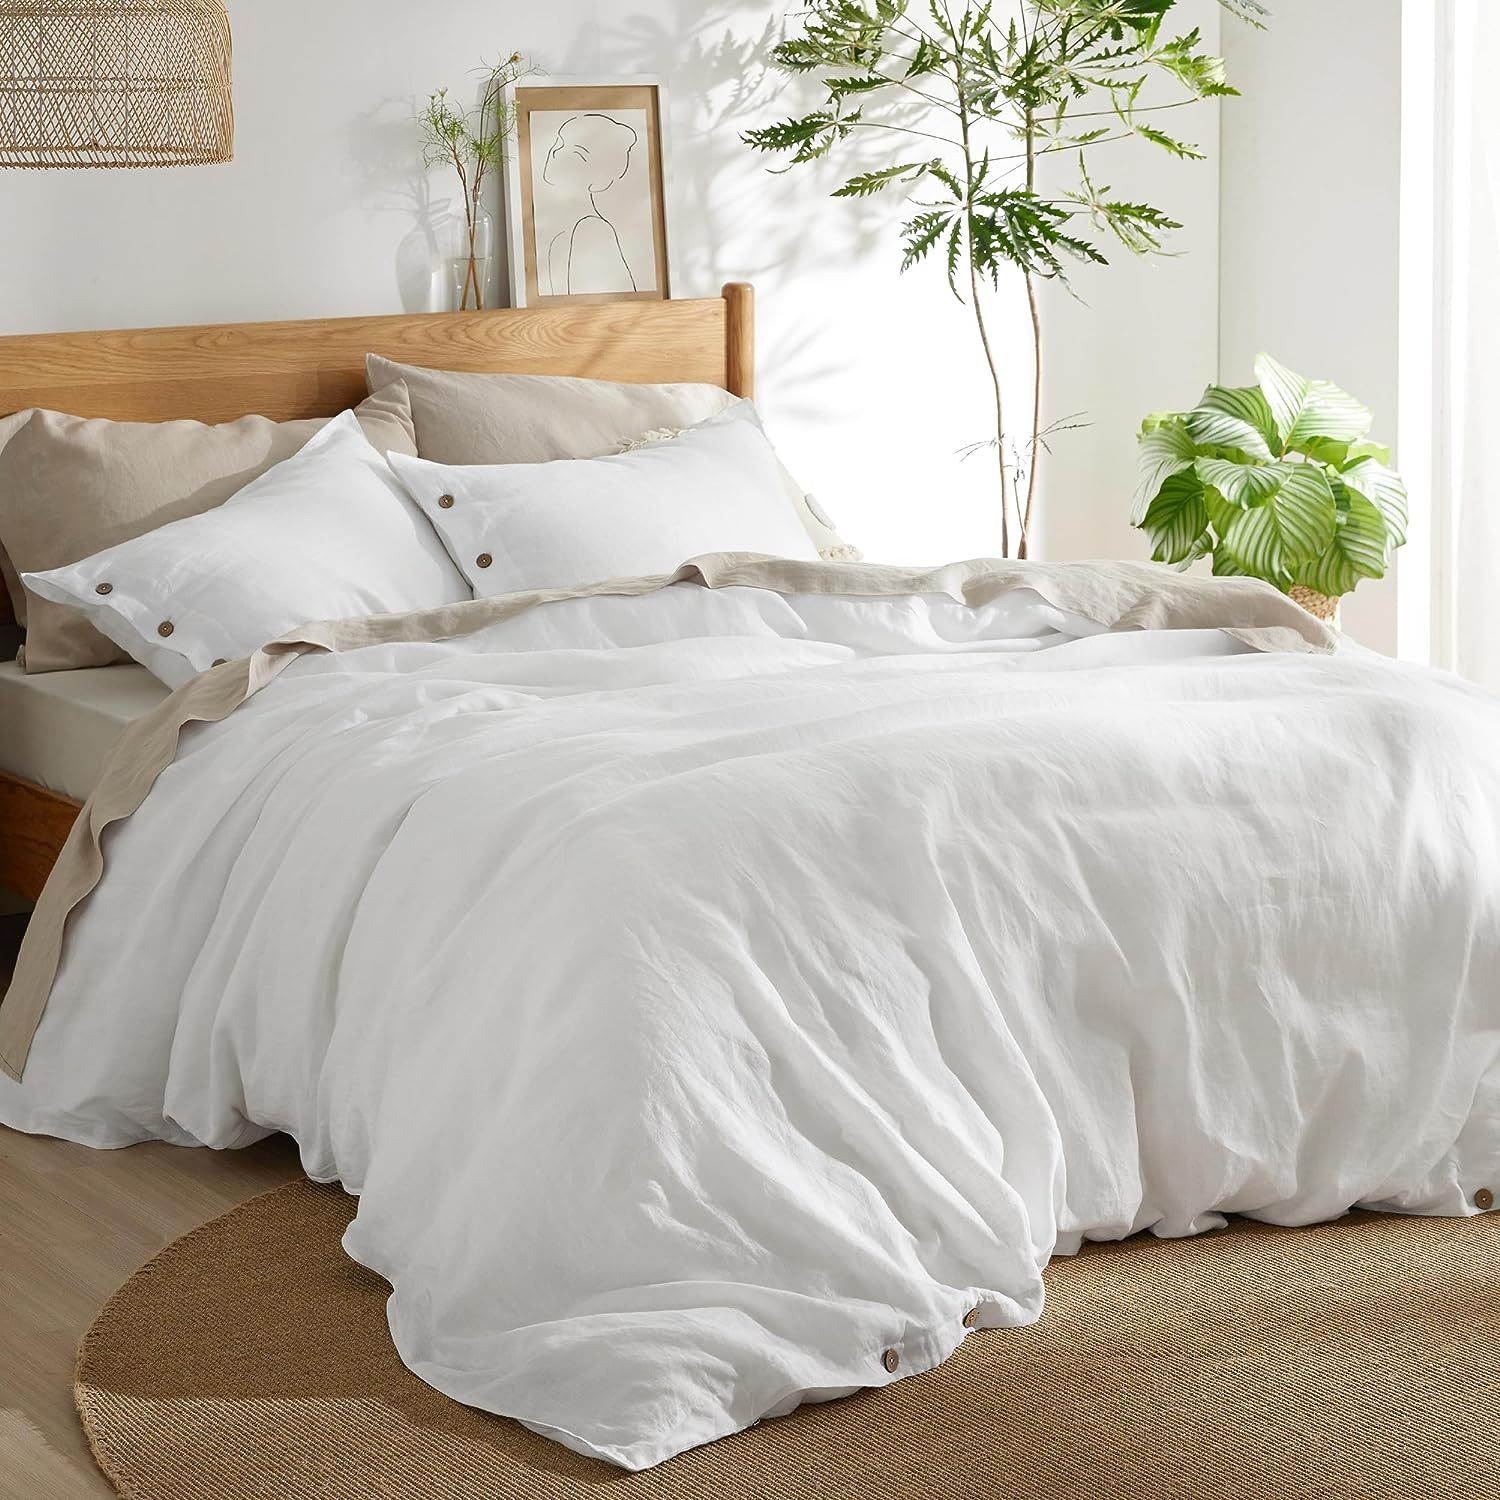 Bedsure Linen Duvet Cover Queen - Linen Cotton Blend Duvet Cover Set, White Linen Duvet Cover, 3 ... | Amazon (US)